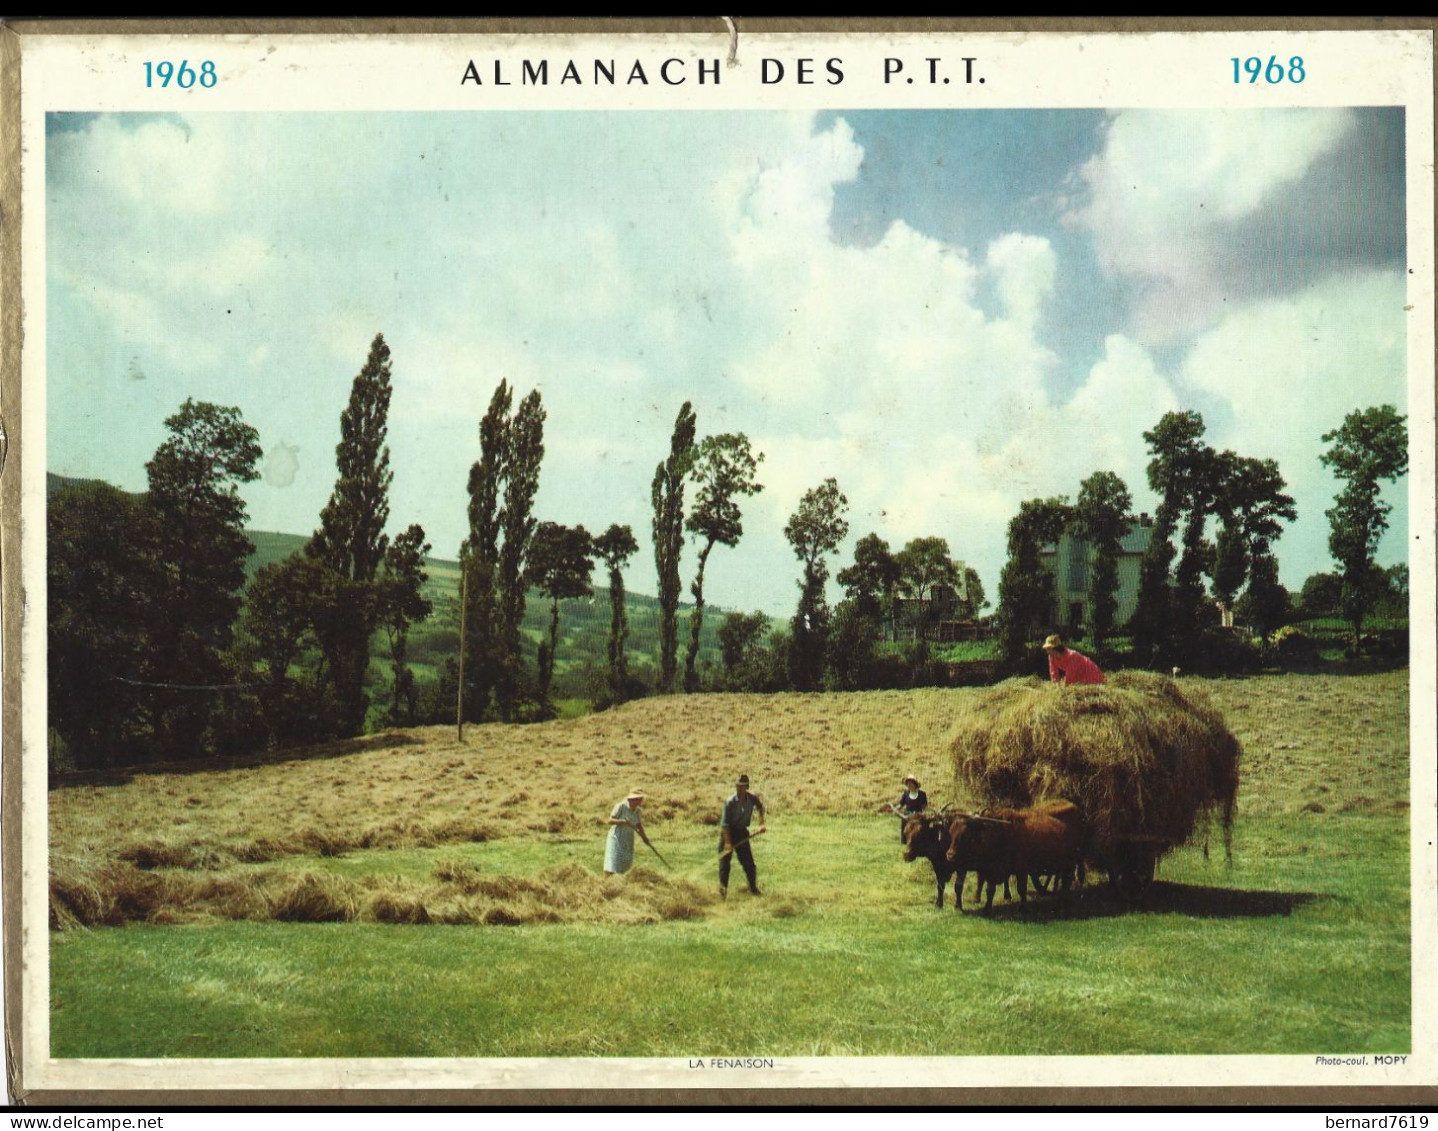 Almanach  Calendrier  P.T.T  -  La Poste -  1968 - La Fenaison - Grossformat : 1961-70